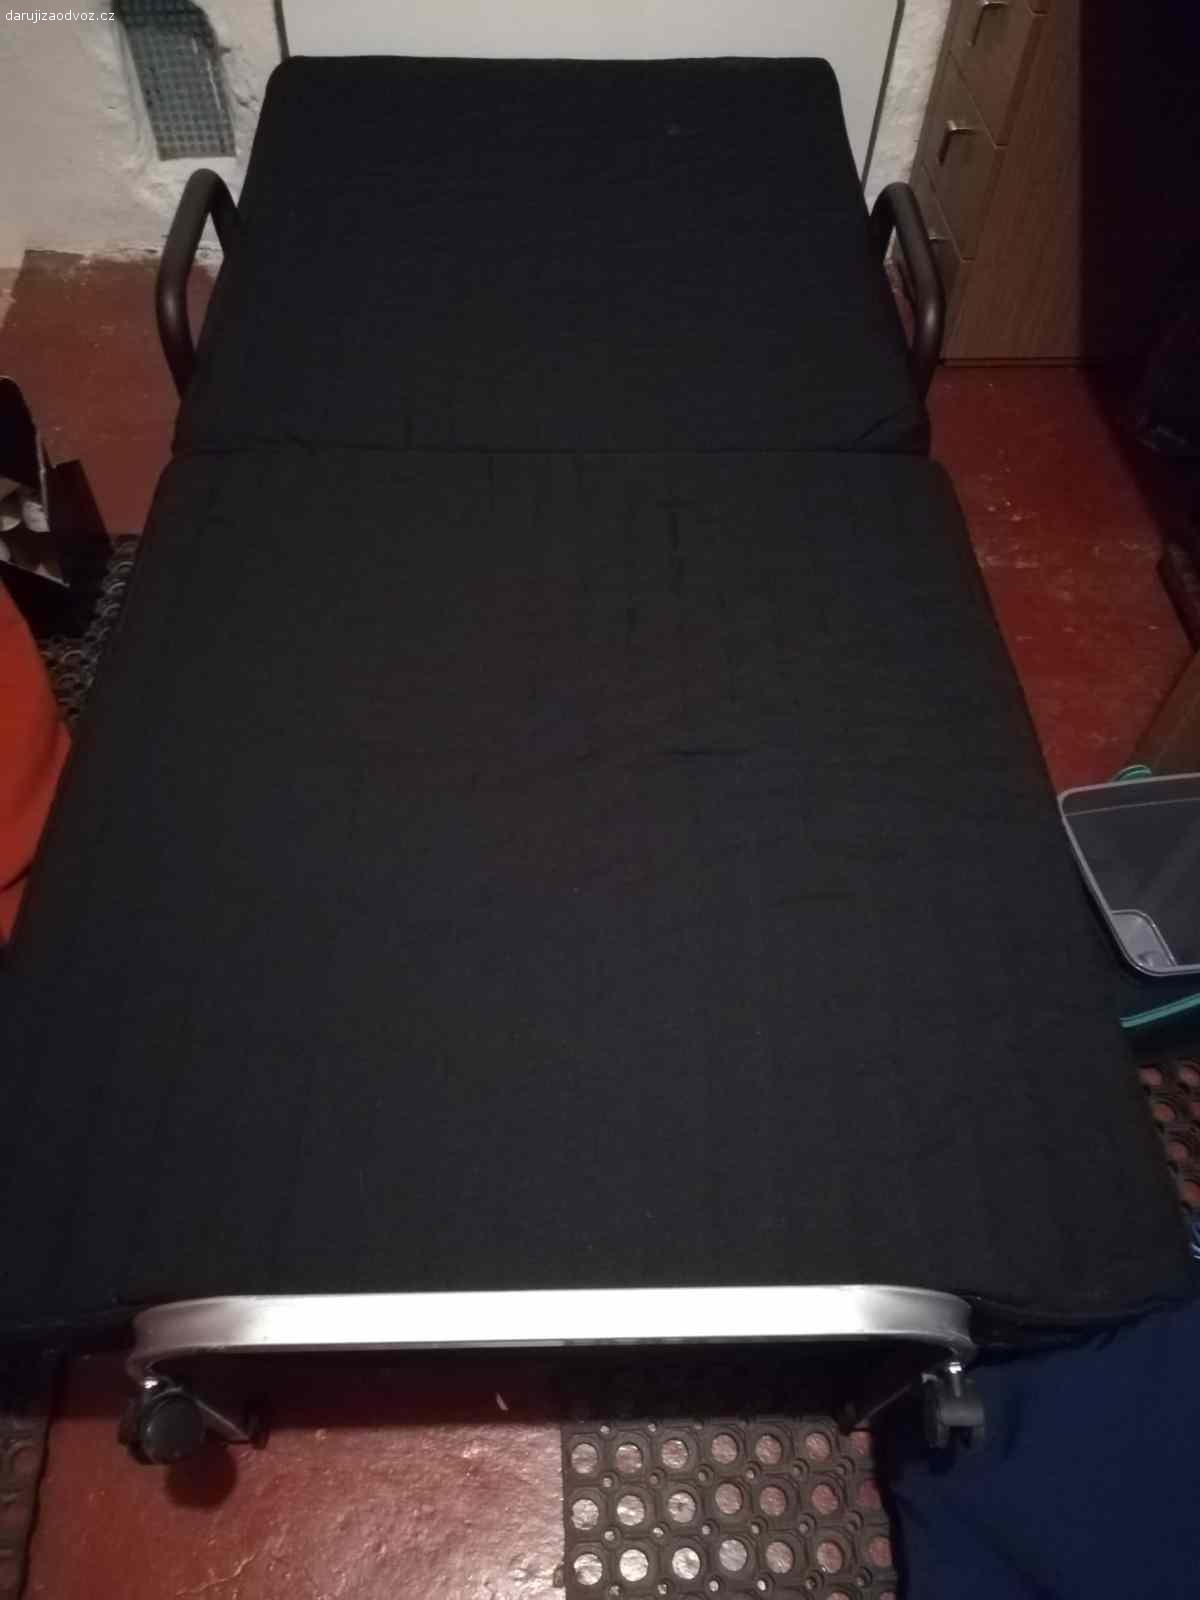 Daruji postel pro hosty. Skoro novou postel s polštářem a dekou